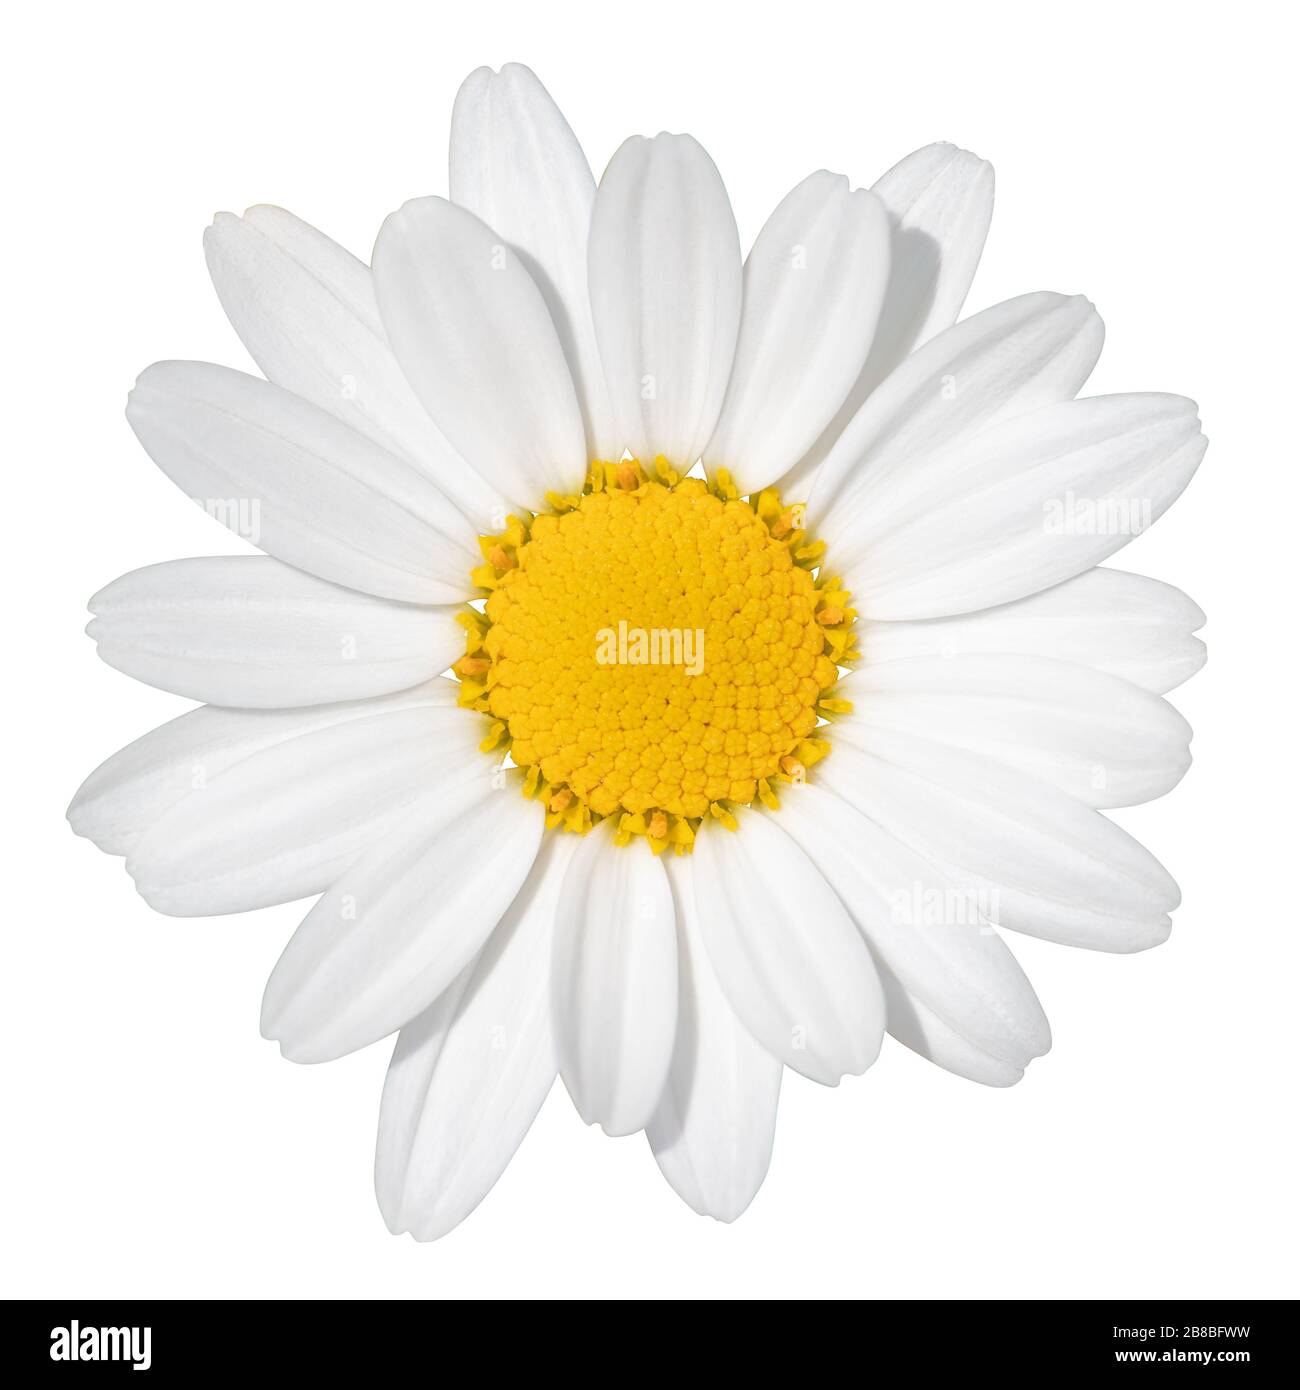 Schöne weiße Daisy (Marguerite) isoliert auf weißem Hintergrund, einschließlich Clipping-Pfad. Deutschland. Reizendes weißes Gänseblümchen (Marguerite) lokalisier Stockfoto